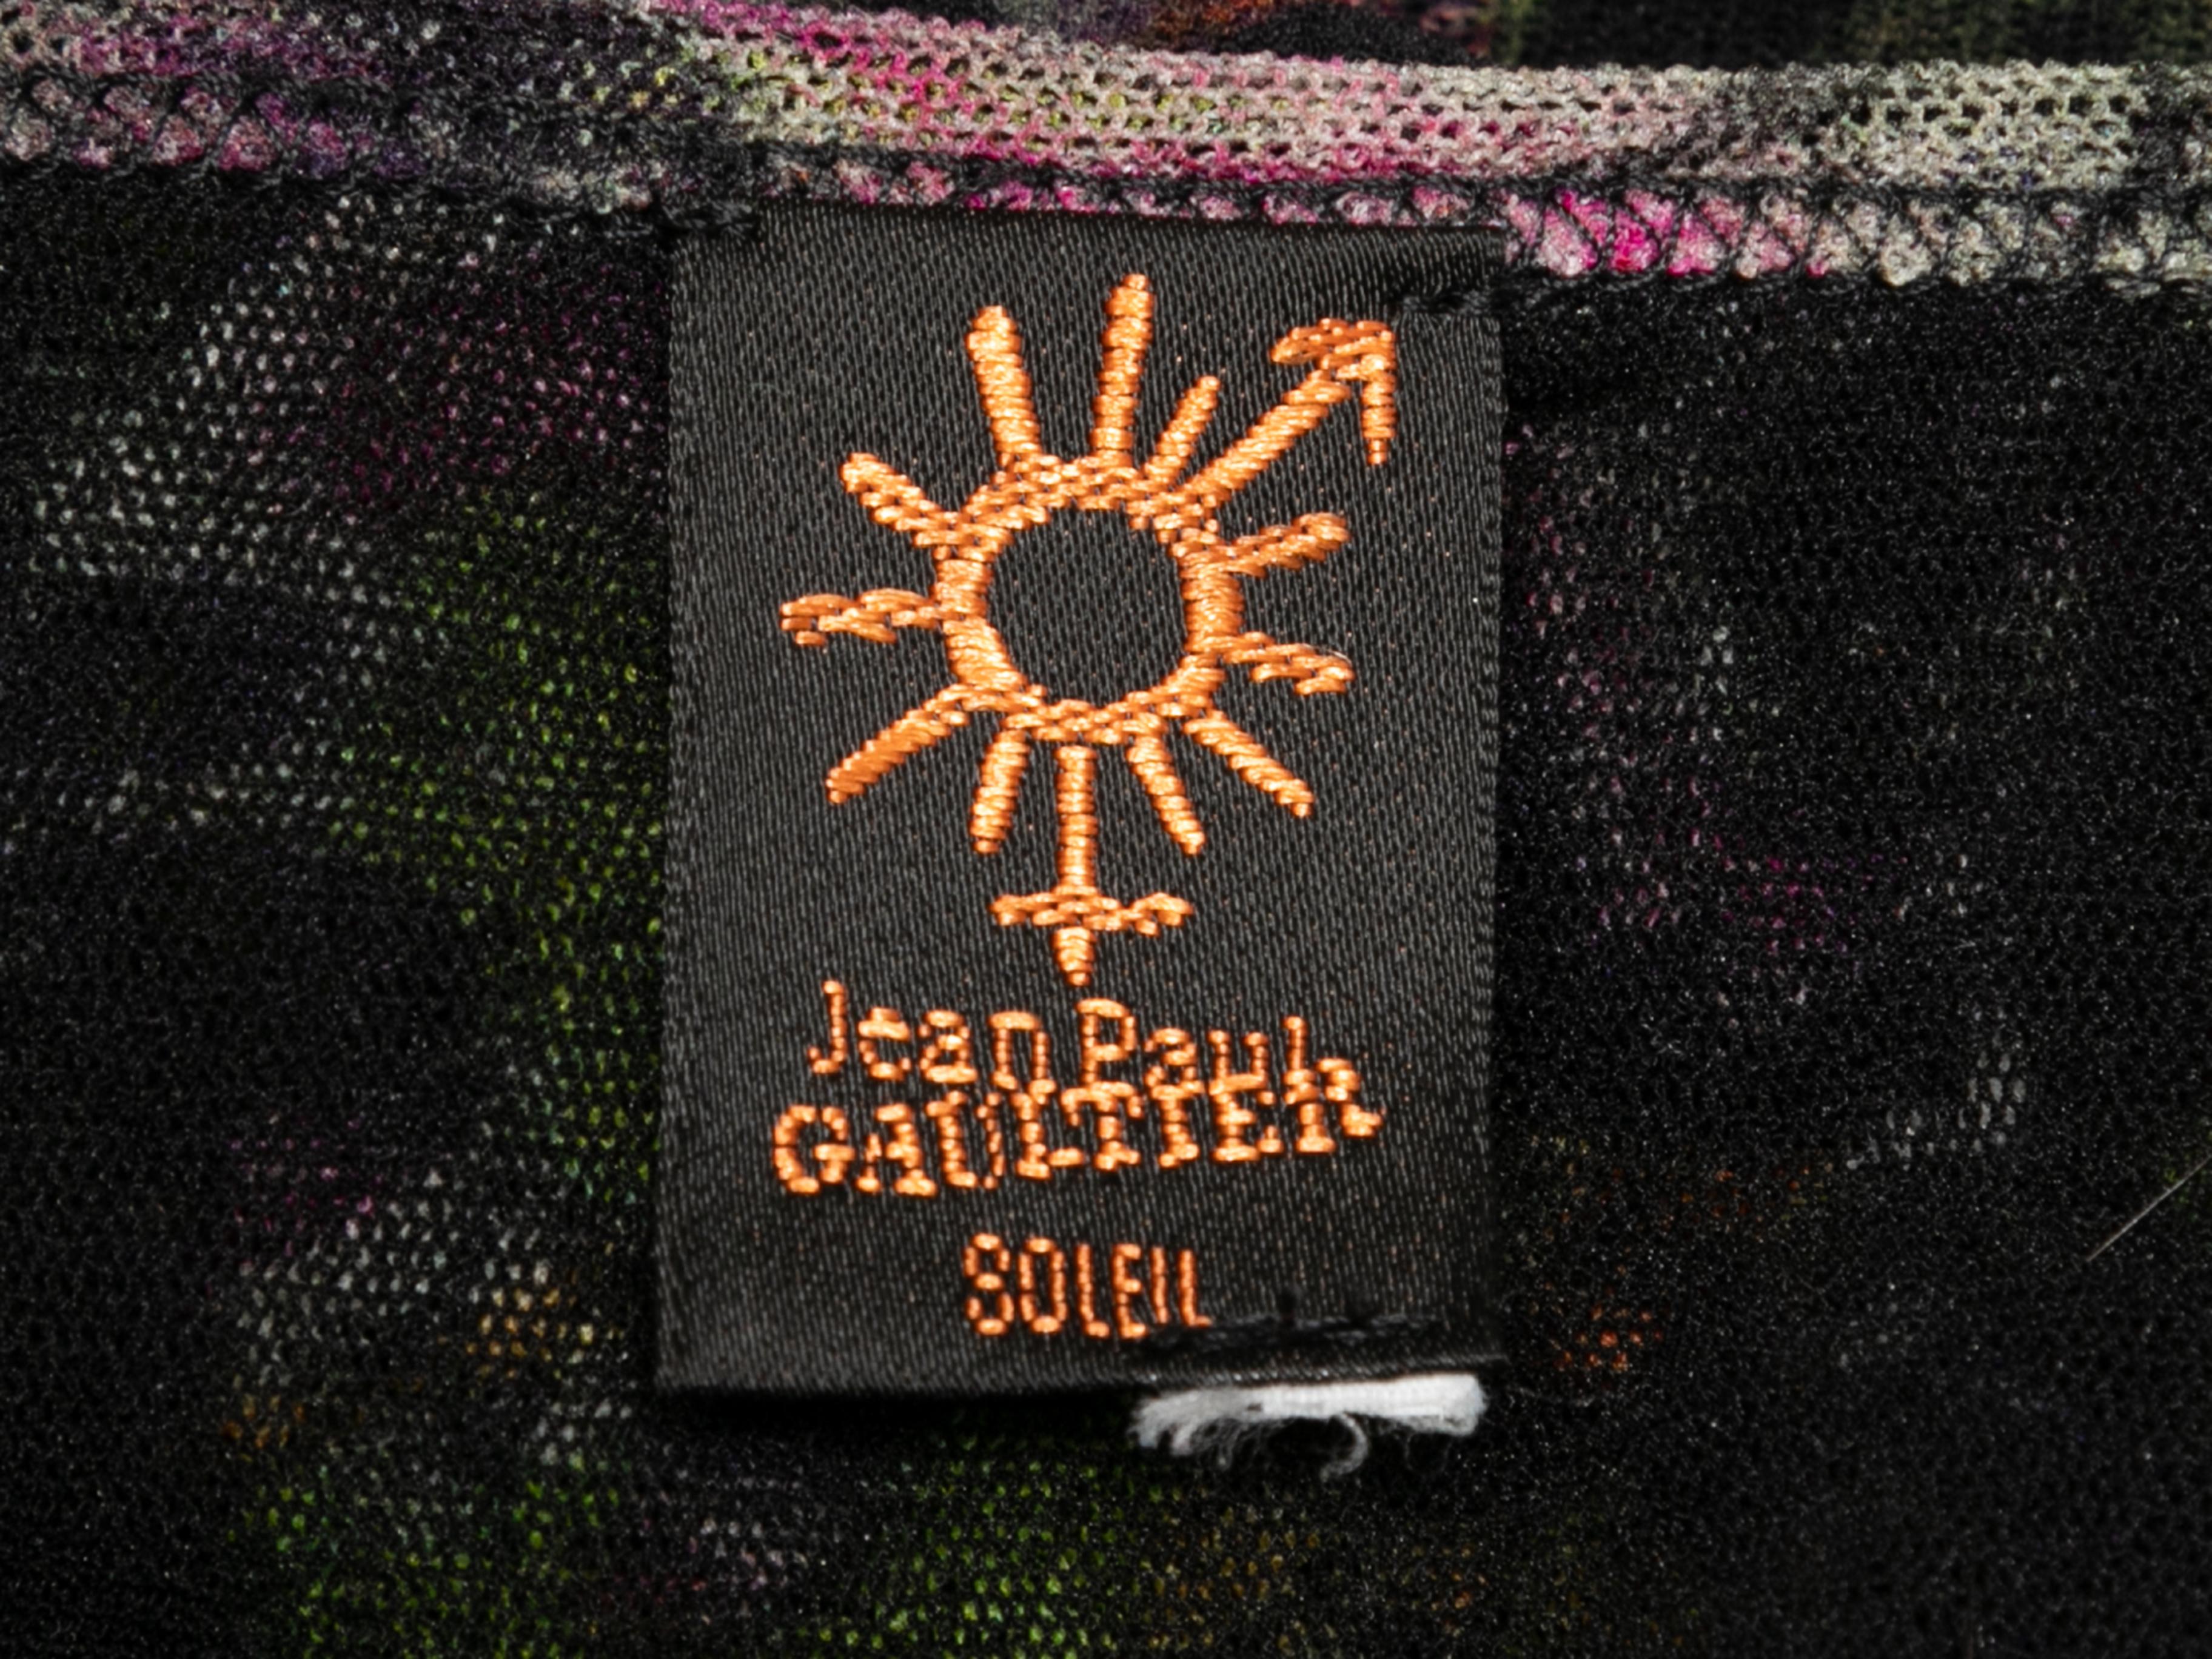 Black & Multicolor Jean Paul Gaultier Soleil Mesh Floral Print Top Size US S 1